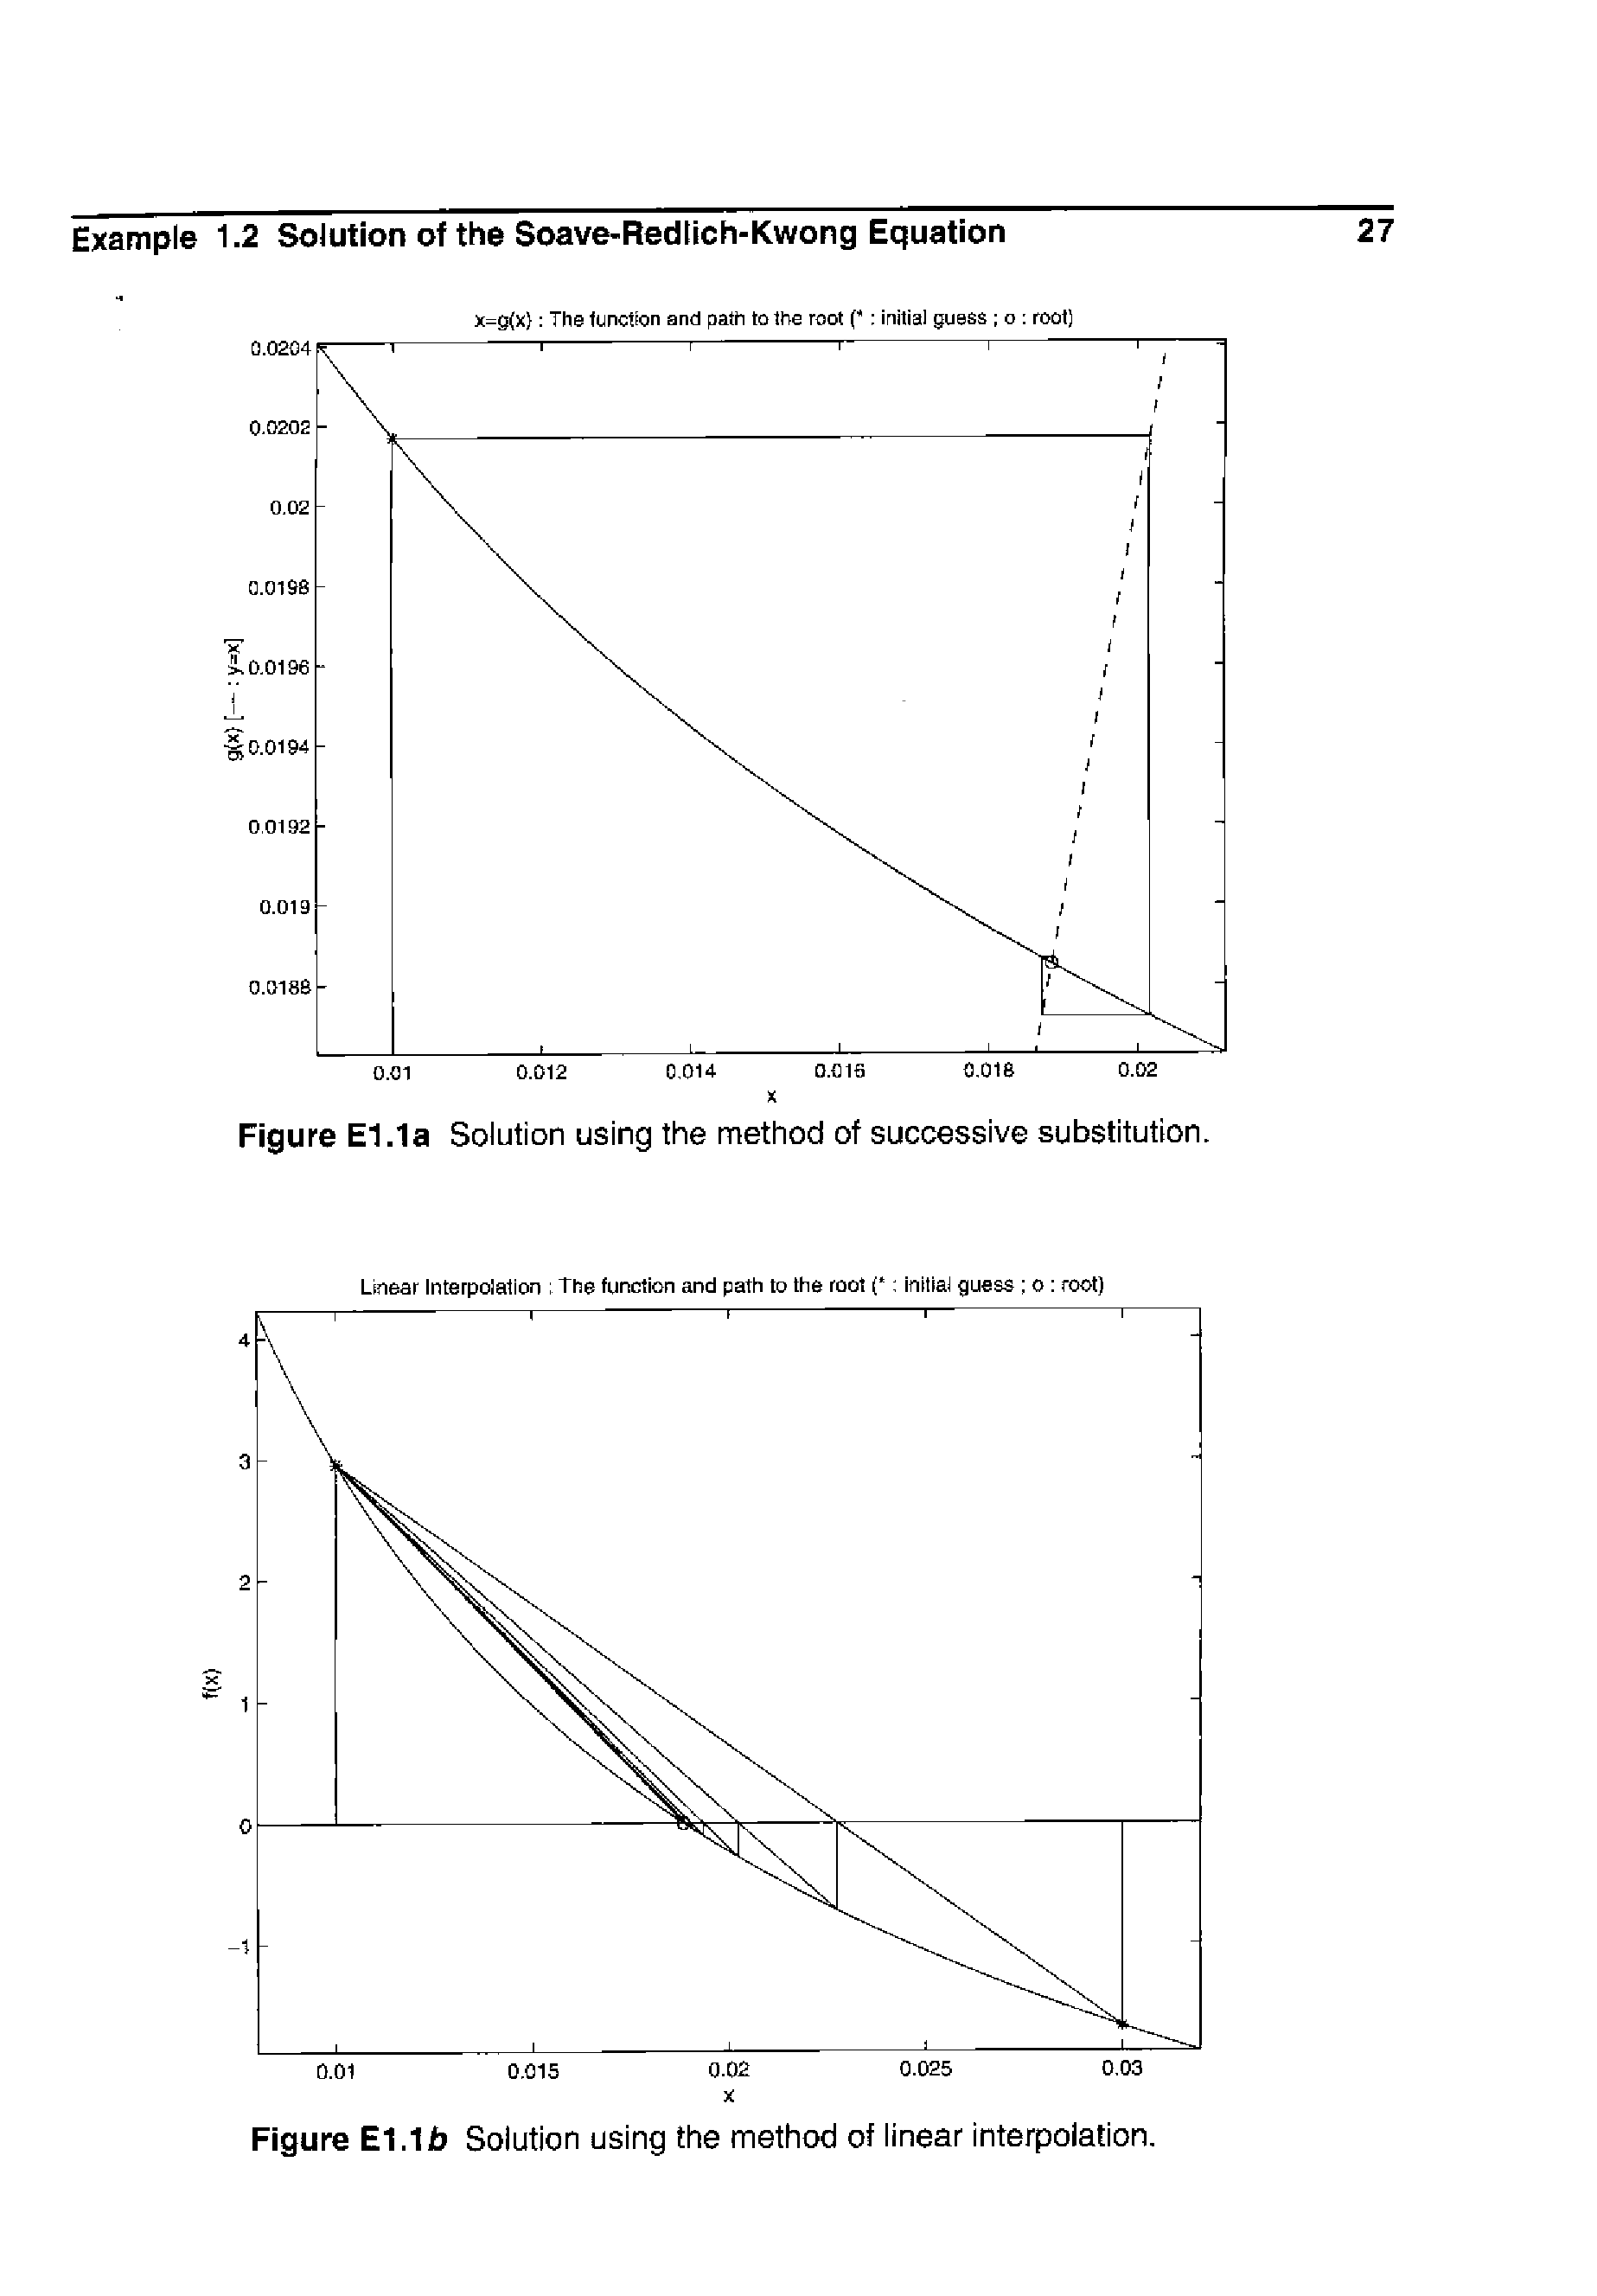 Figure El.la Solution using the method of successive substitution.